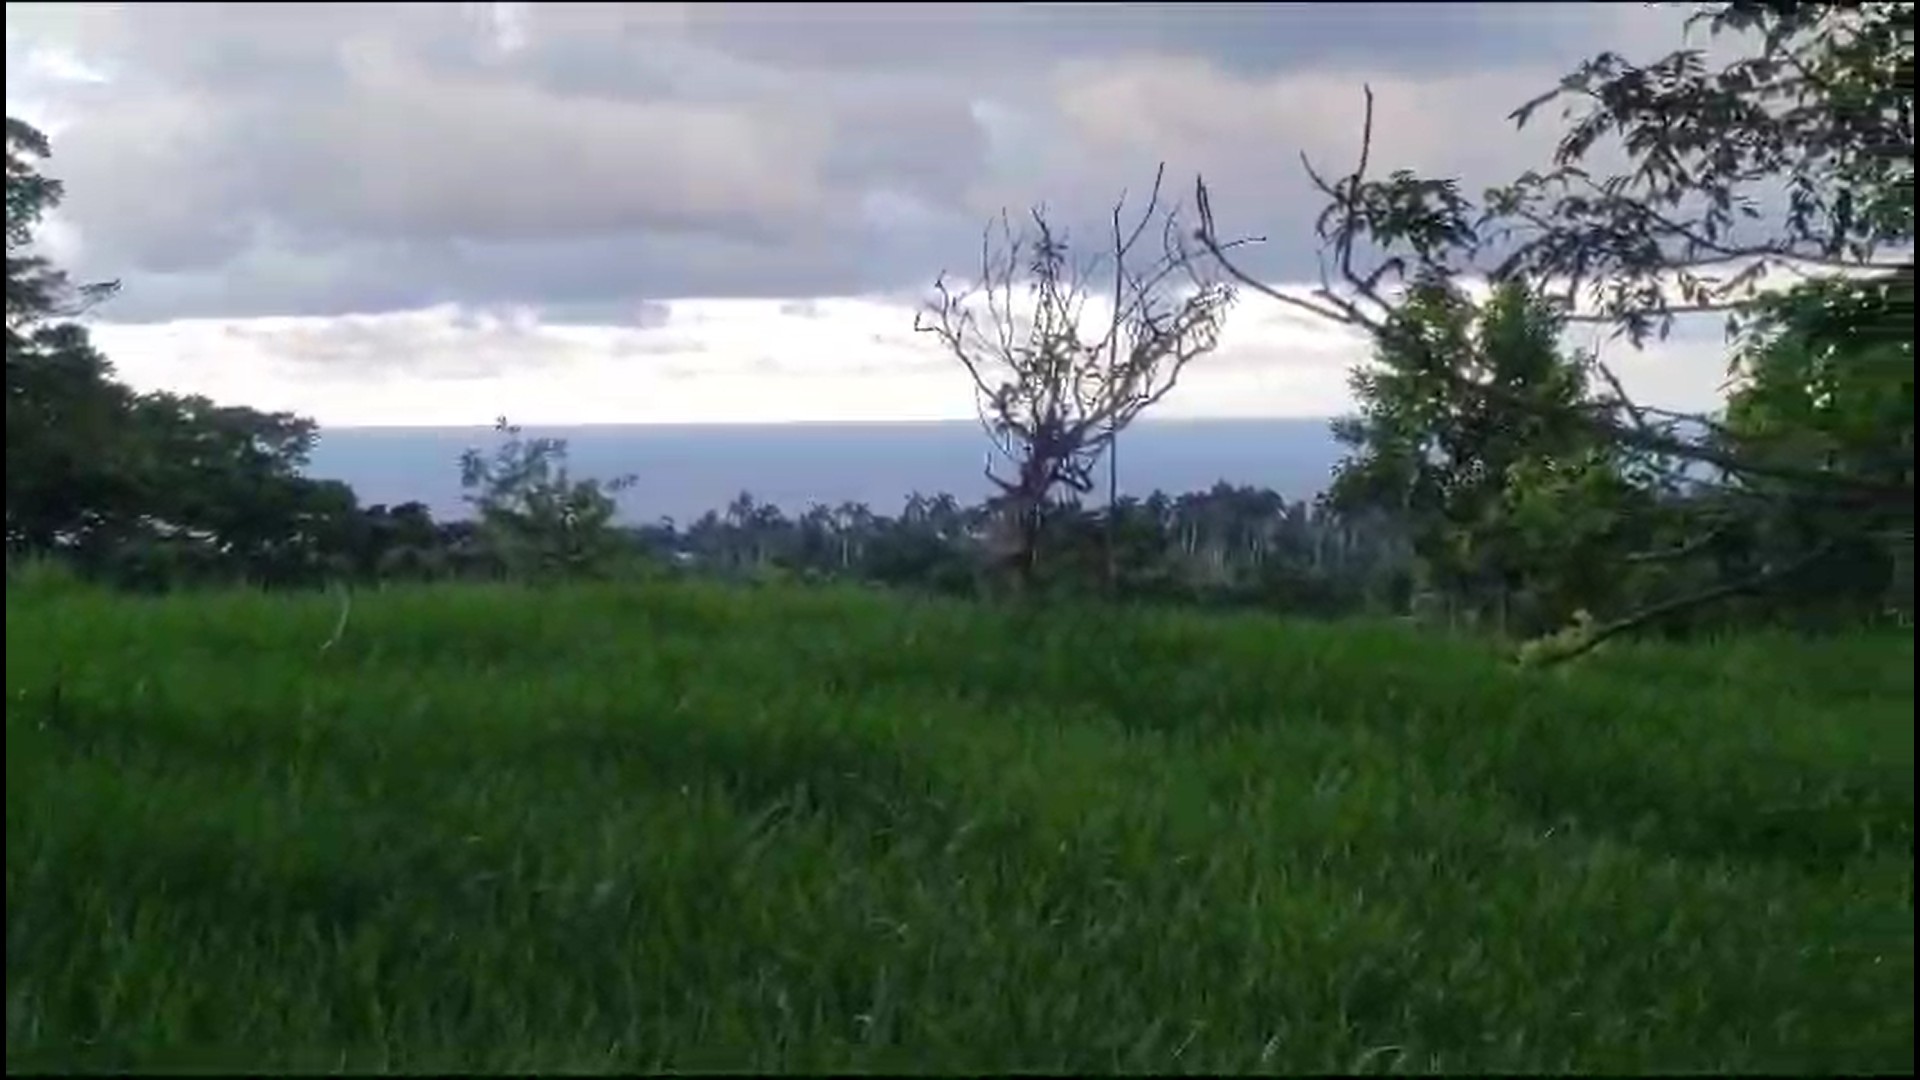 solares y terrenos - 152 tareas de tierra en Cabrera, Maria Trinidad Sanchez, Republica Dominicana. 0